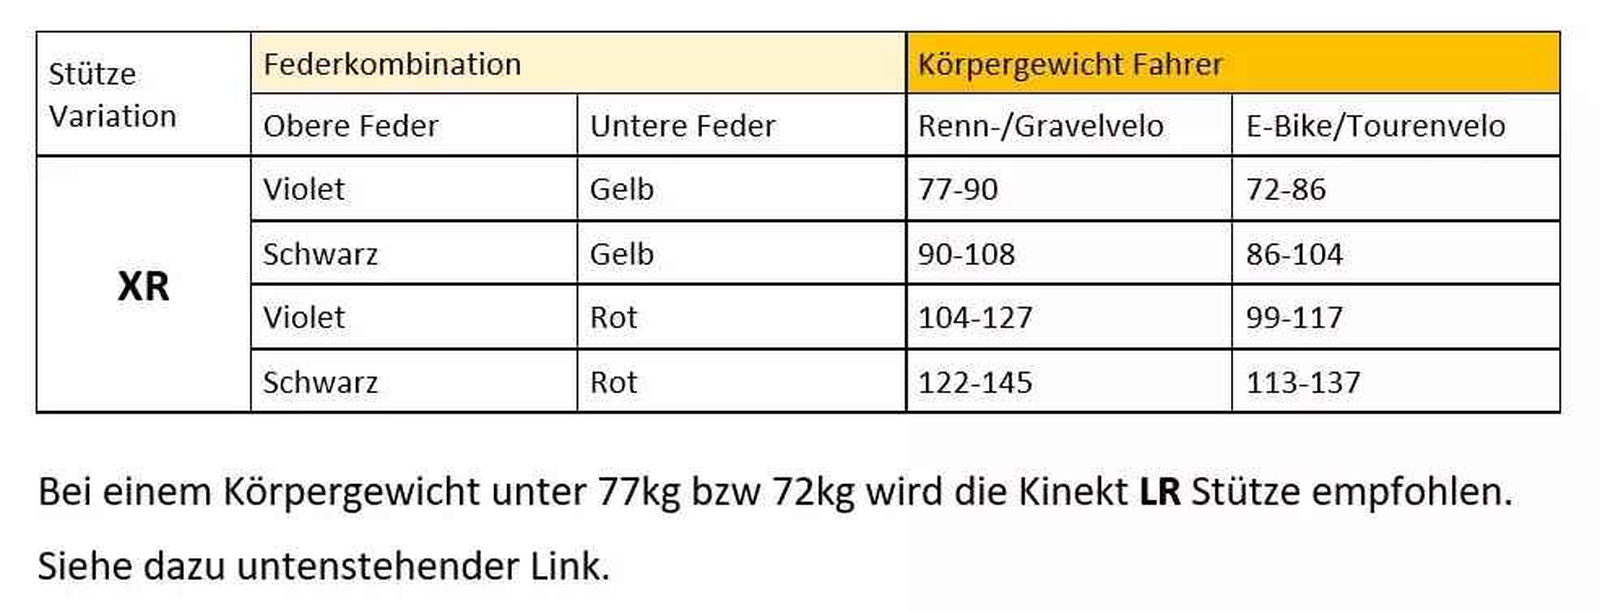 Tige de selle KINEKT new XR 31.6x420mm (Stromer)